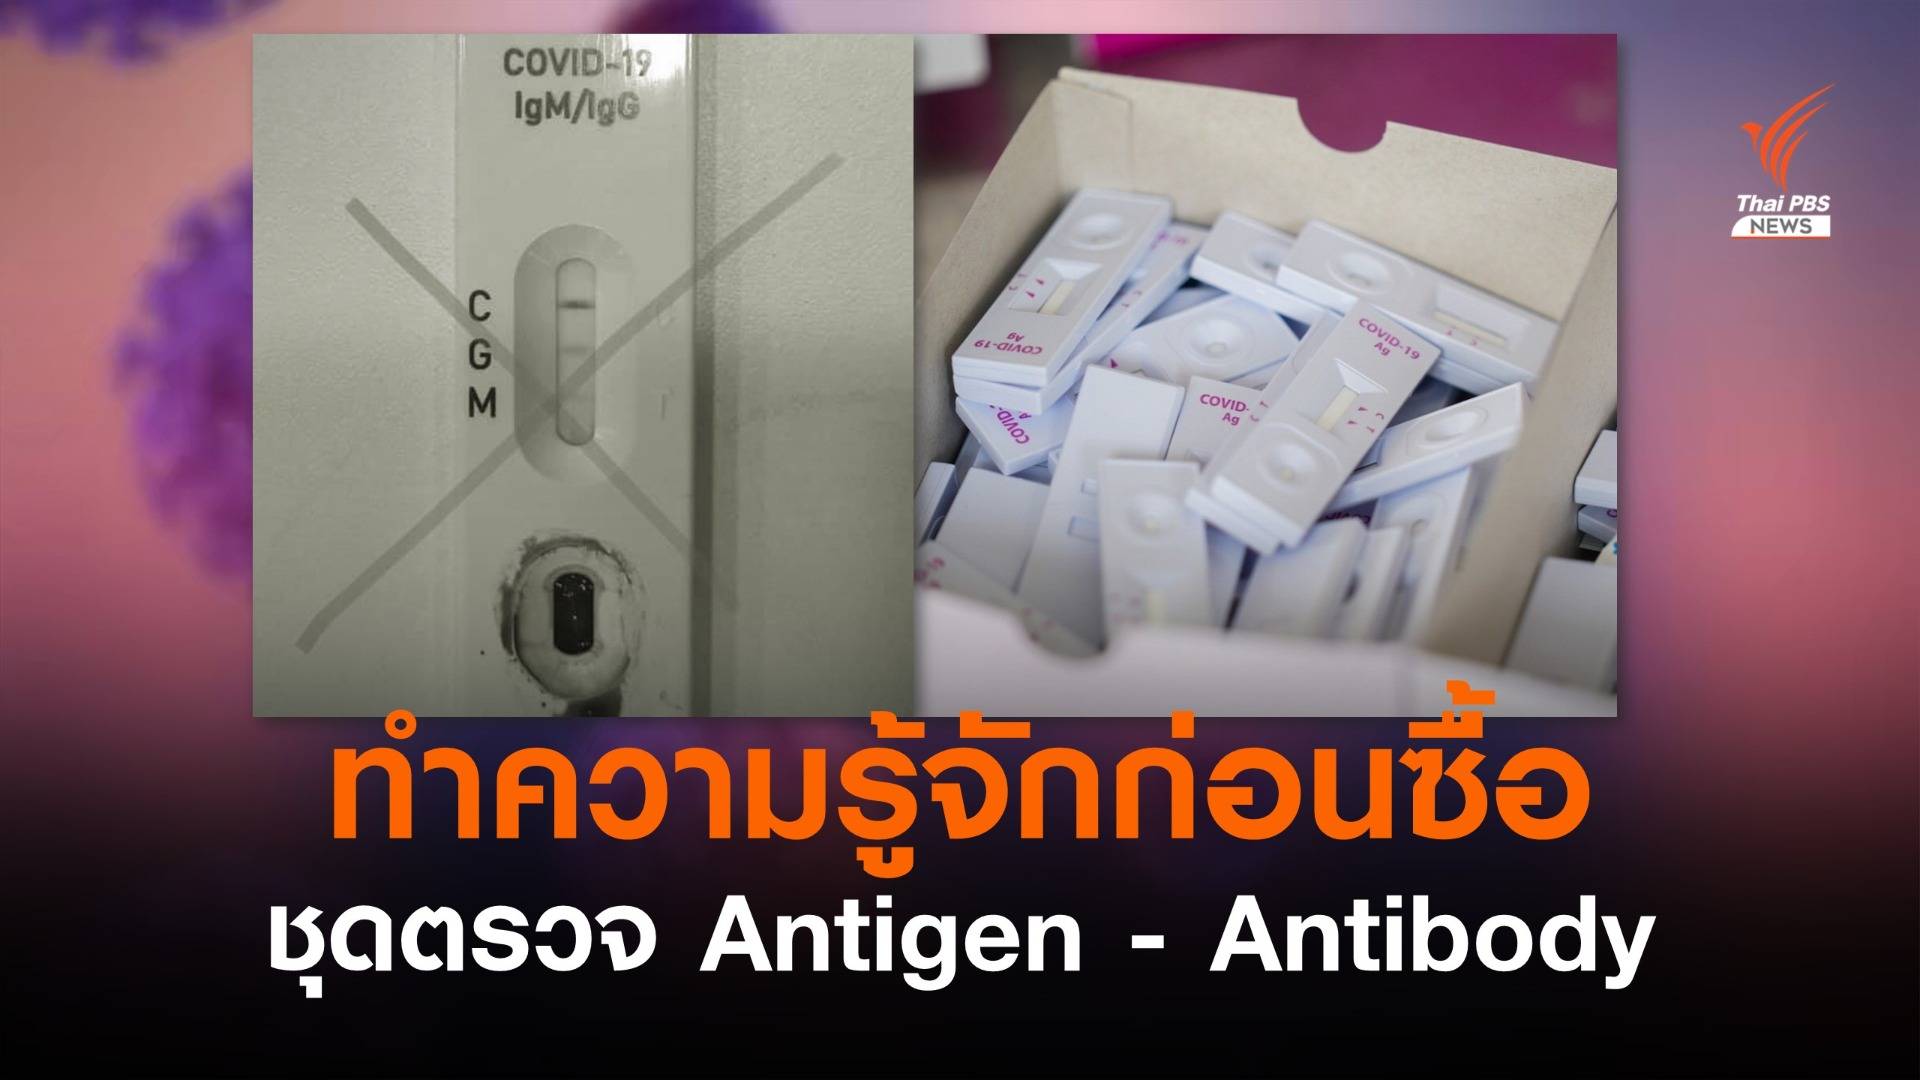 "หมอแล็บ" เตือนระวังซื้อผิด Antigen แยงจมูก-Antibody เจาะเลือด